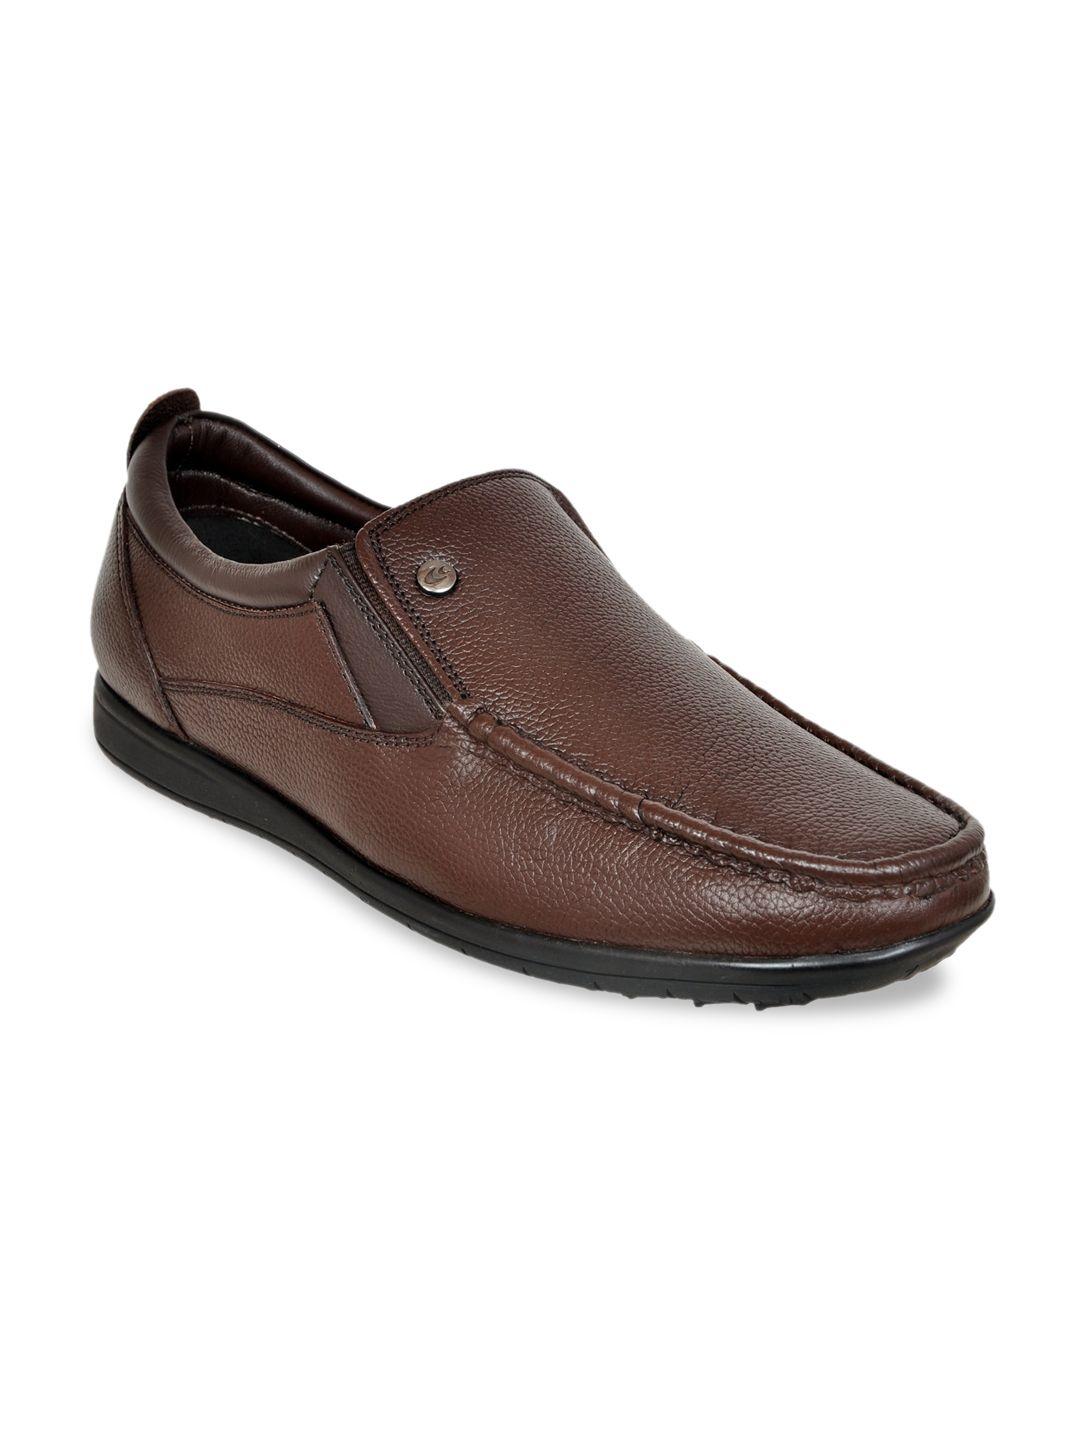 allen-cooper-men-textured-leather-slip-on-sneakers